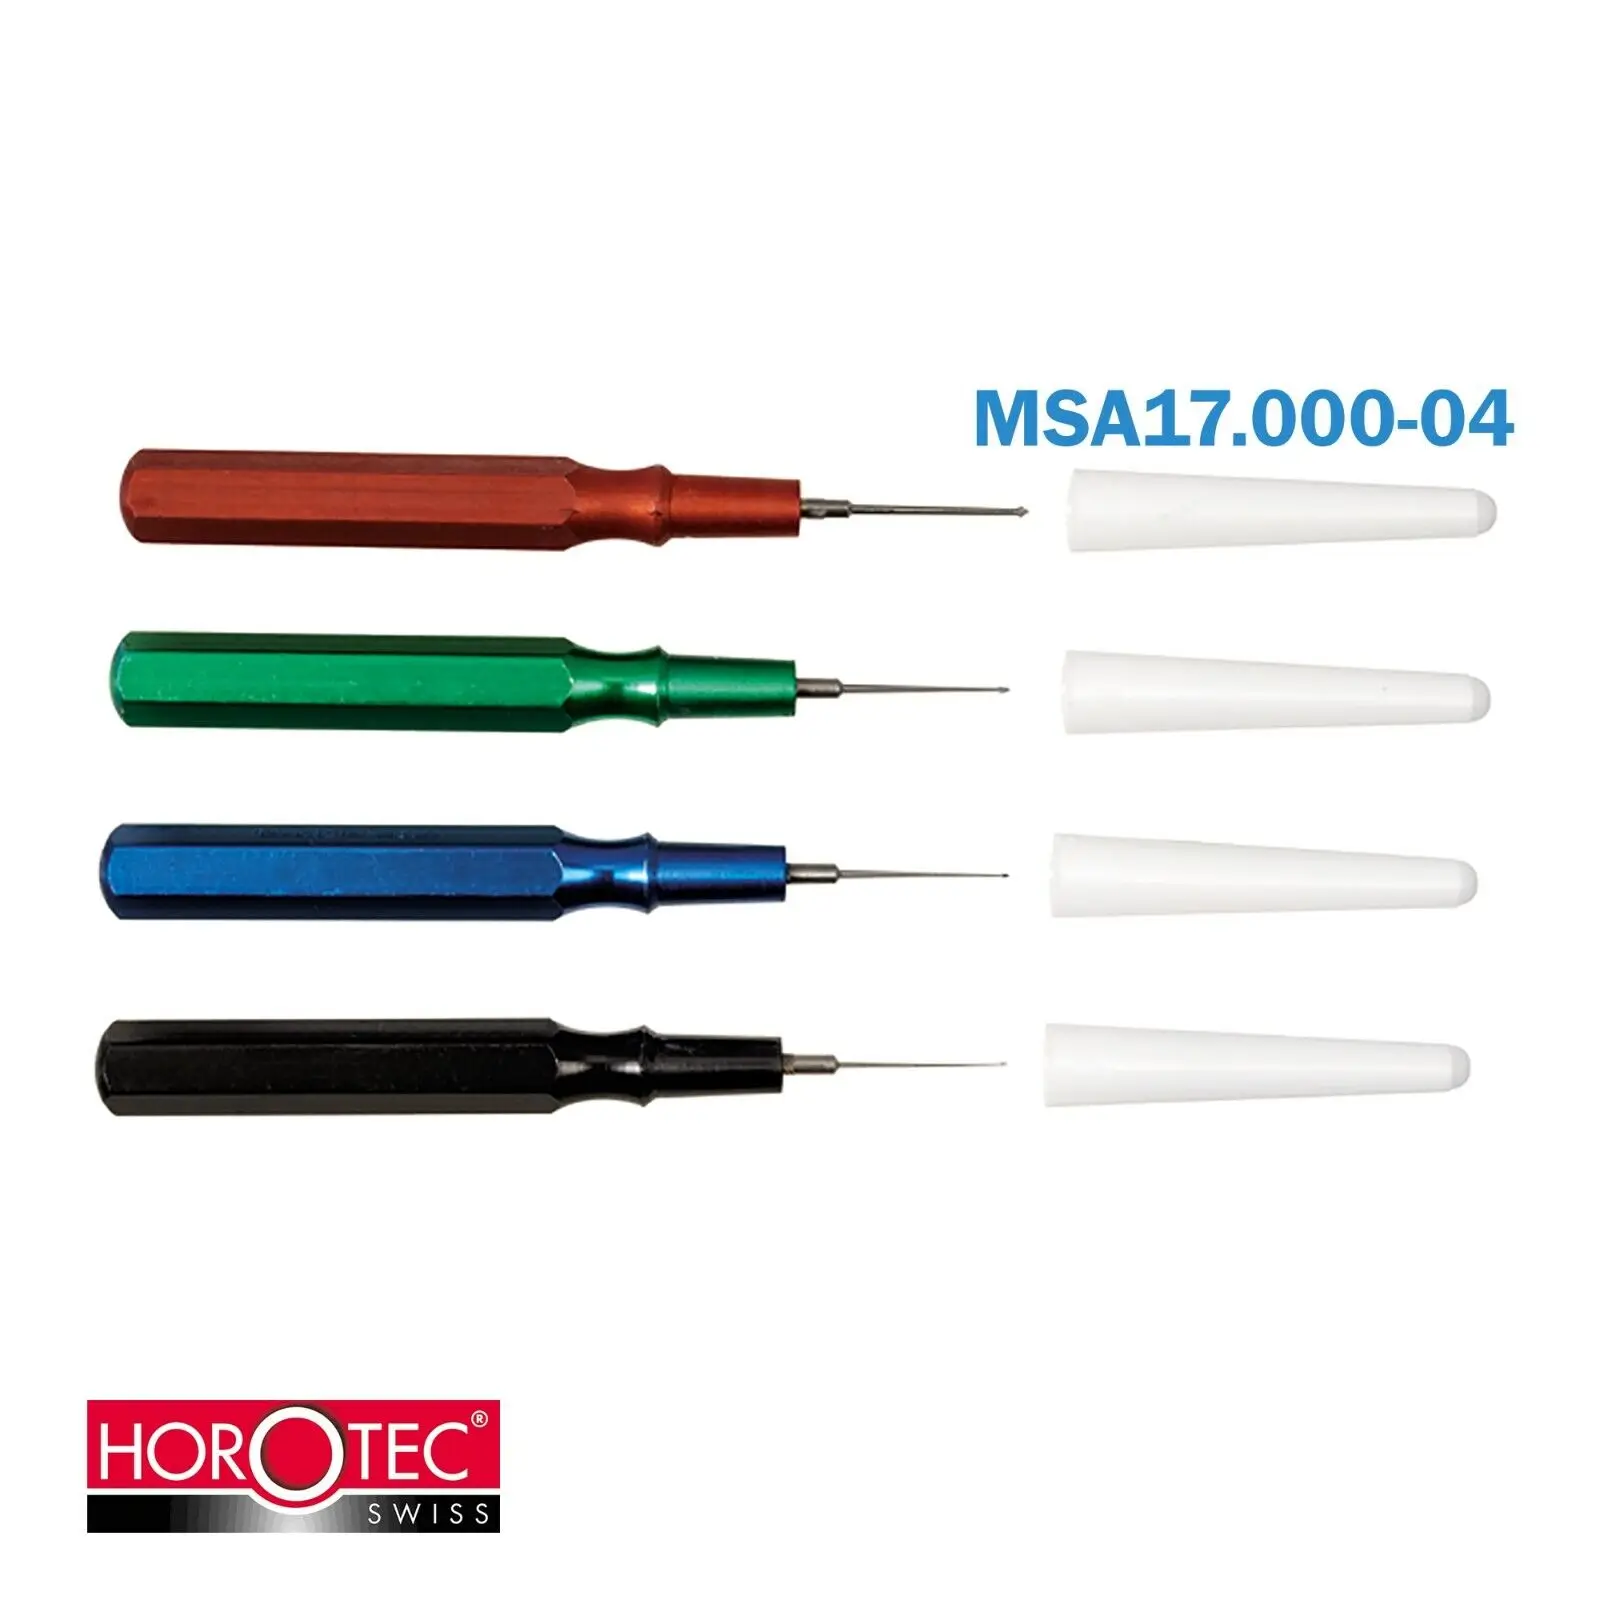 Horotec MSA17.000-04 В ассортименте 4 простые масленки с алюминиевой ручкой ø 6 мм